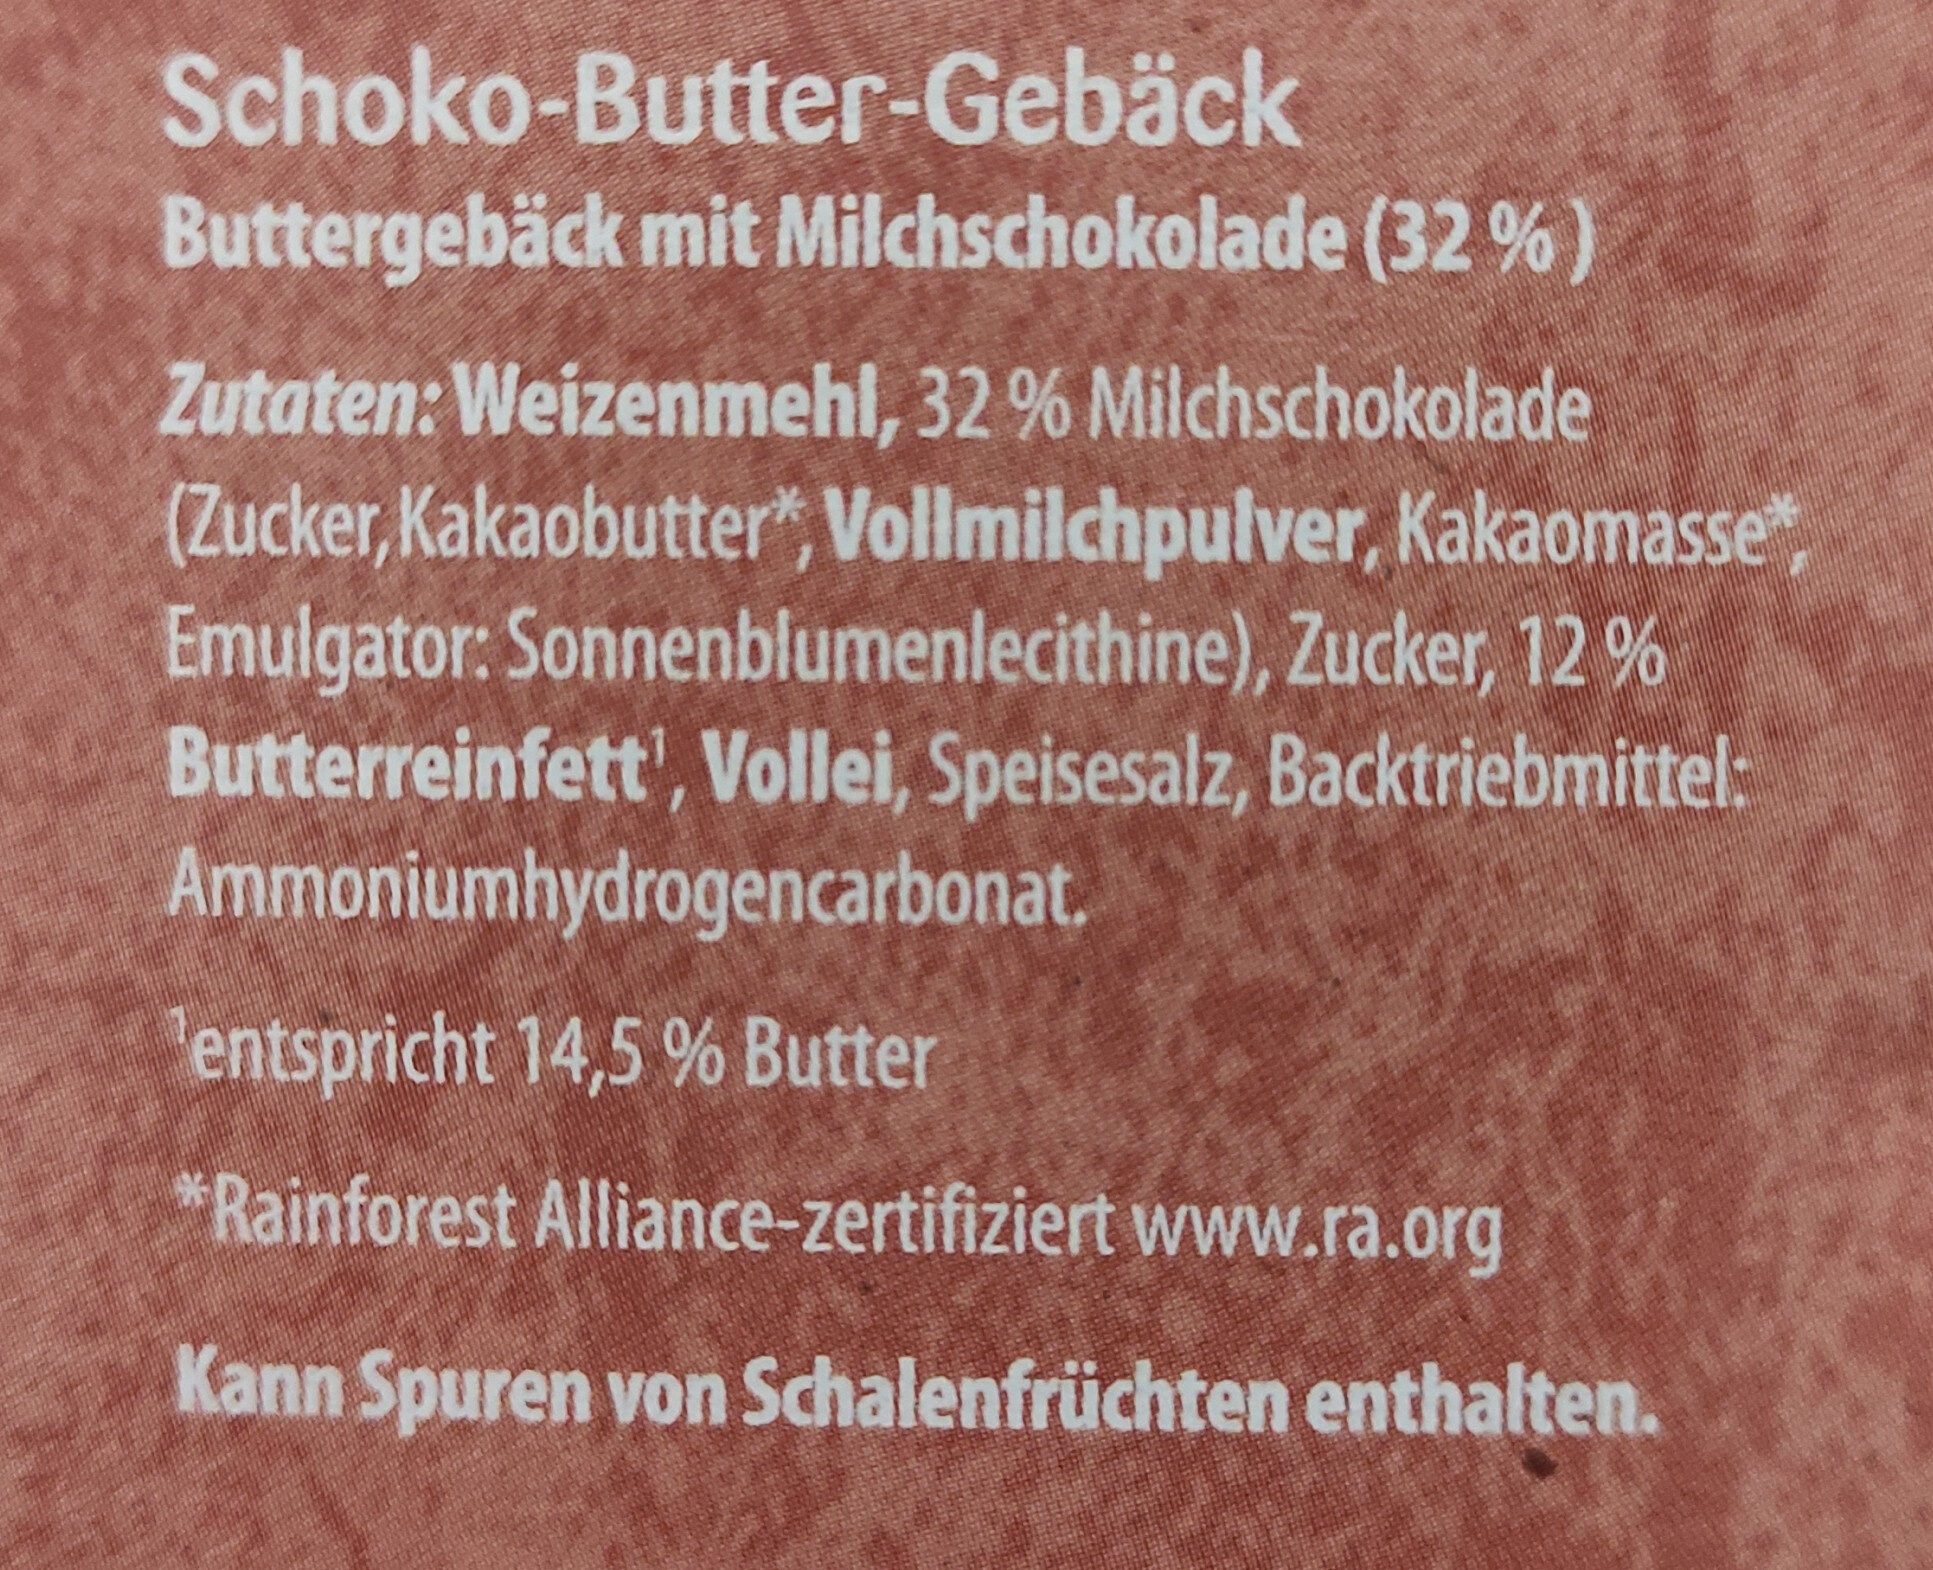 Schoko Butter Geback - Ingredients - de